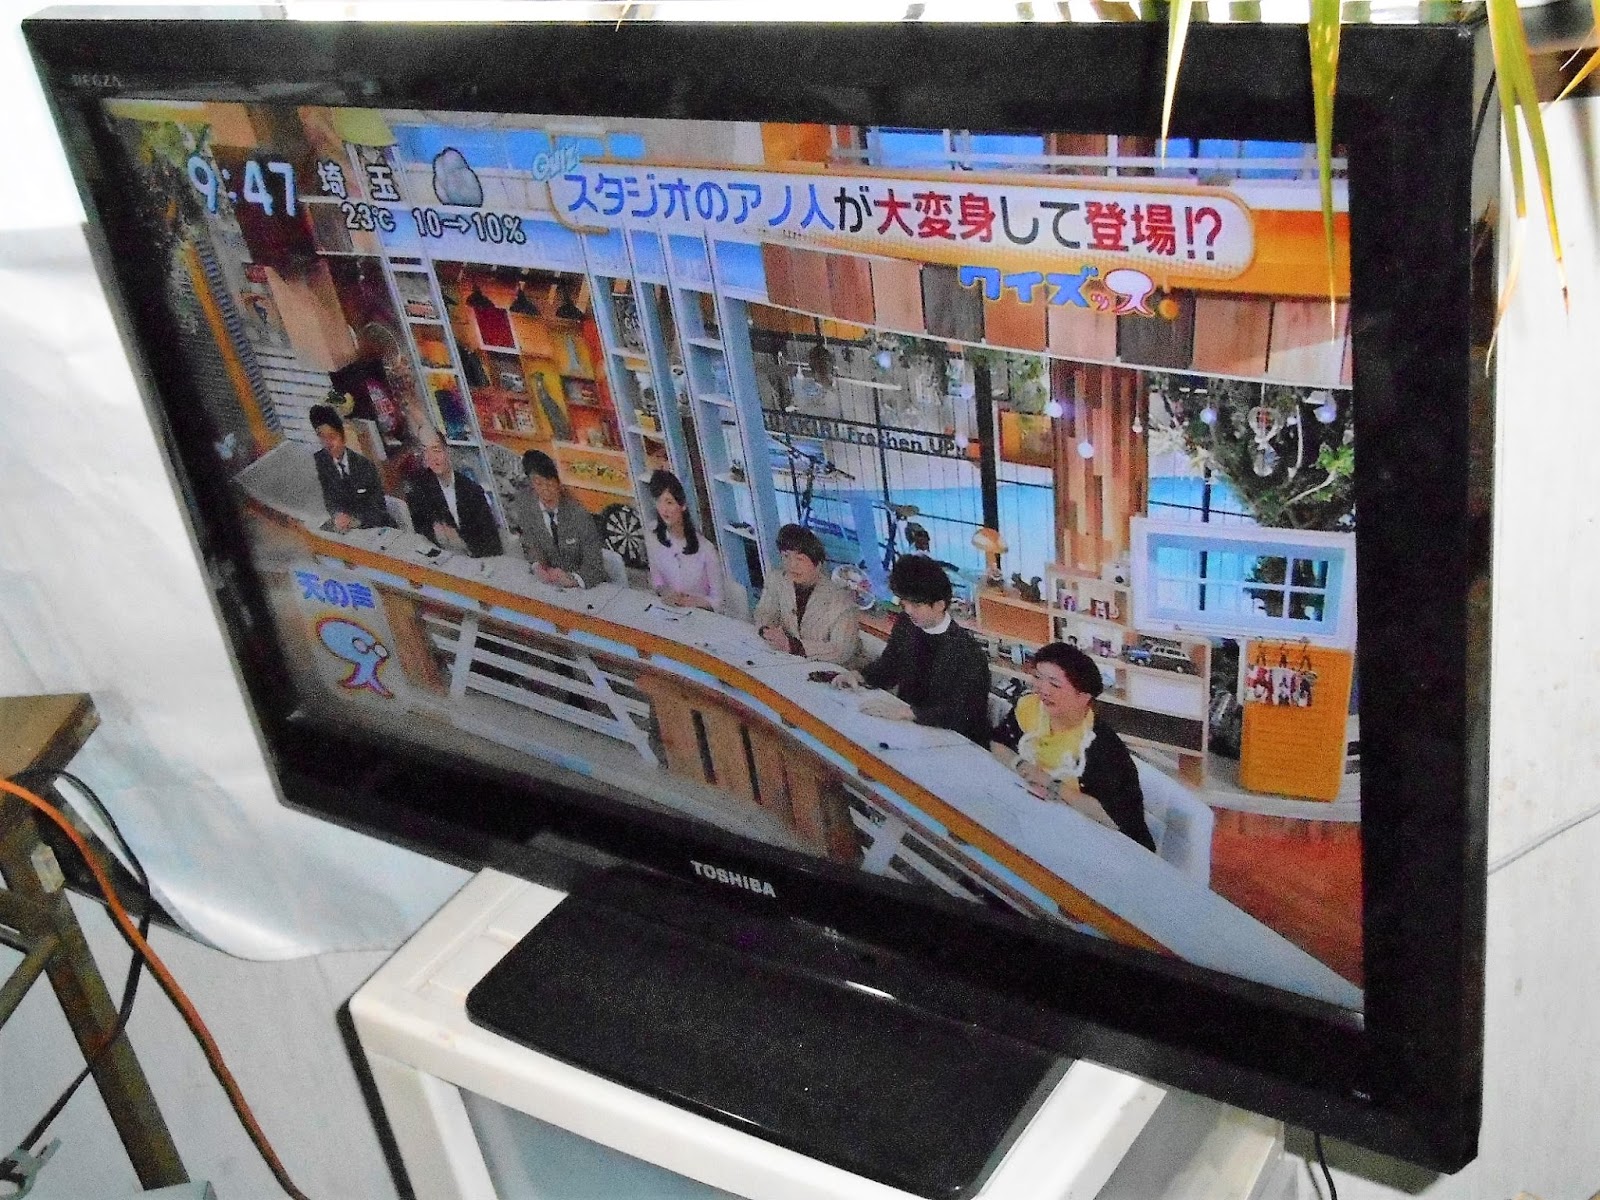 電化生活館・エルマン家具店ブログ: TOSHIBA REGZA 液晶テレビ 32インチ 32A1 出品いたしました。